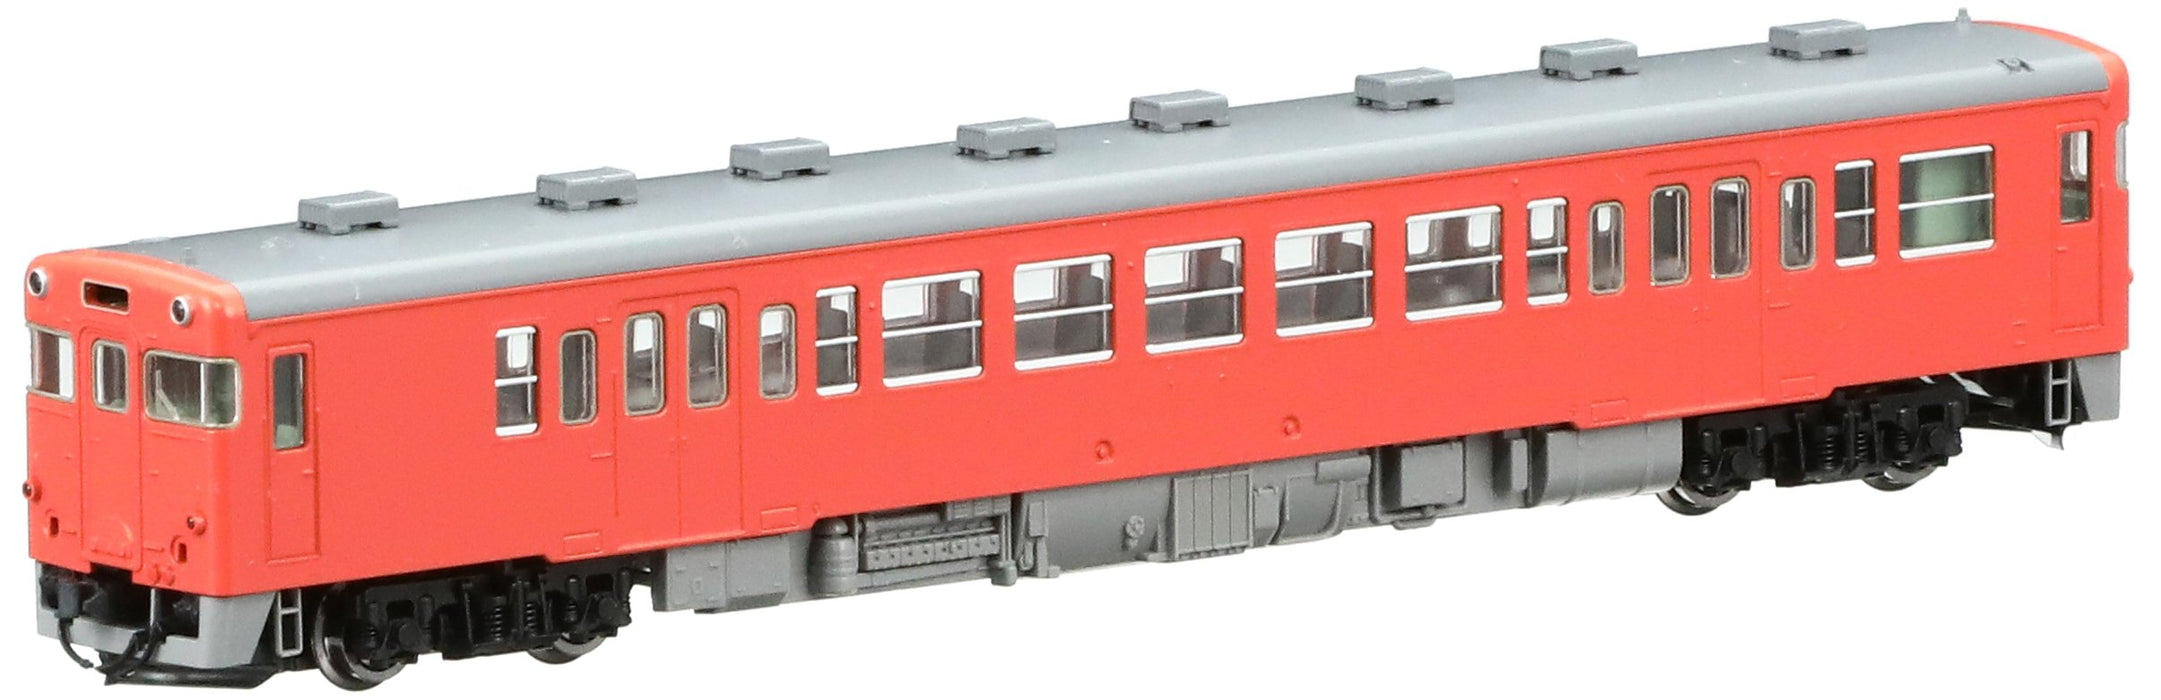 Tomytec Tomix N Gauge Kiha53 Diesel Car - Railway Model in Metropolitan Area Color